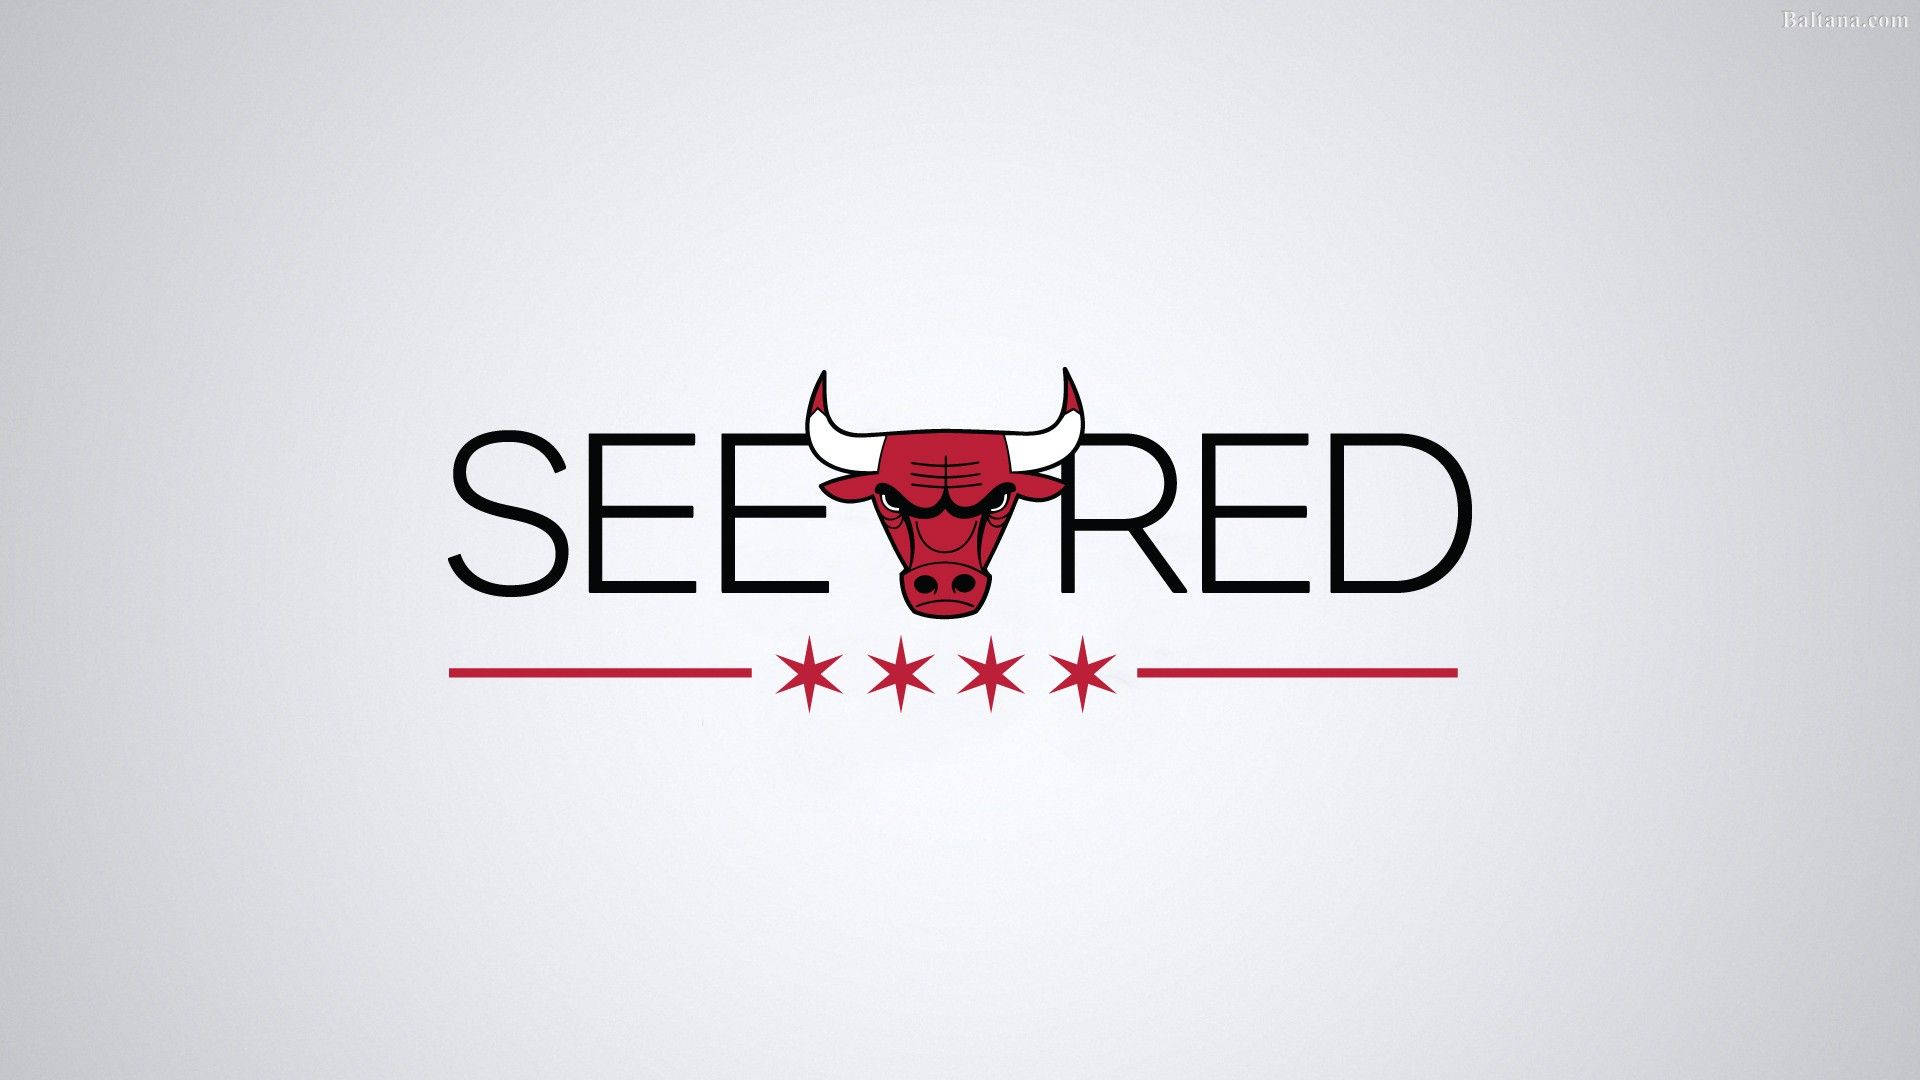 Chicago Bulls All White Logo